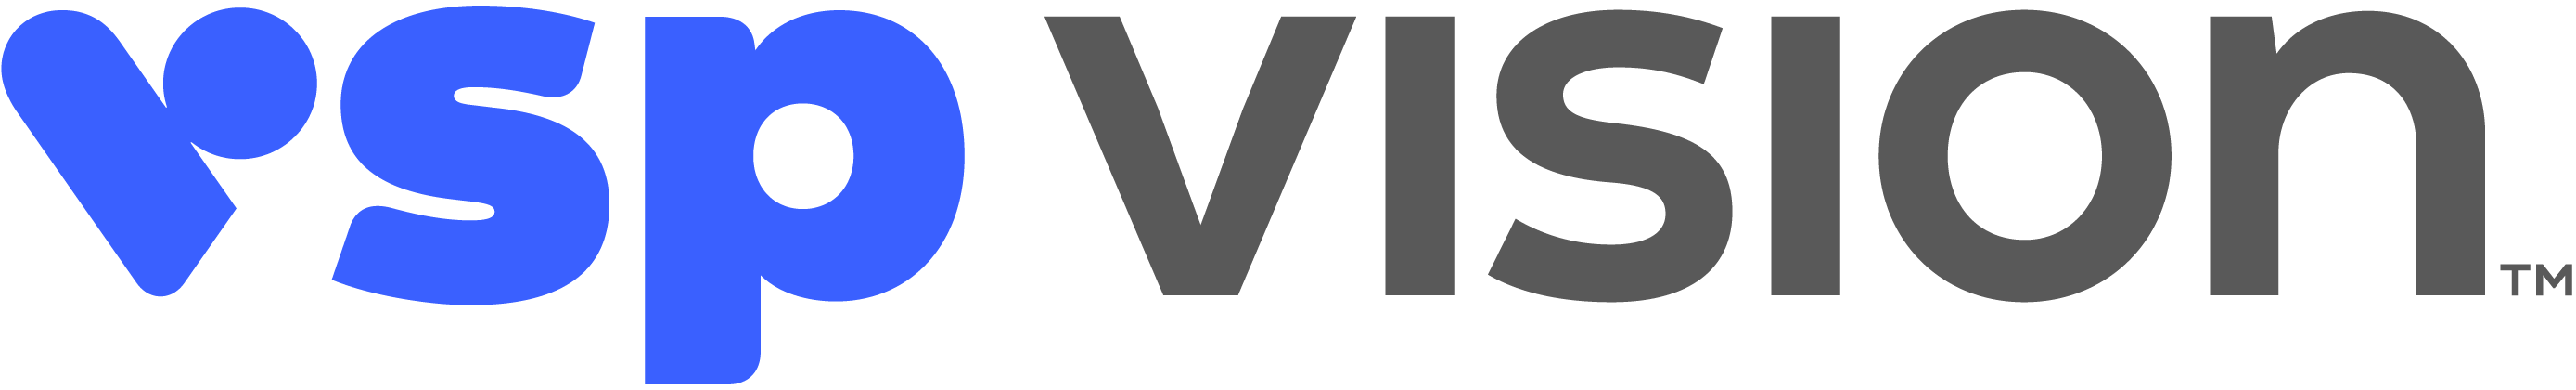 vsp_vision_logotype_rgb.png